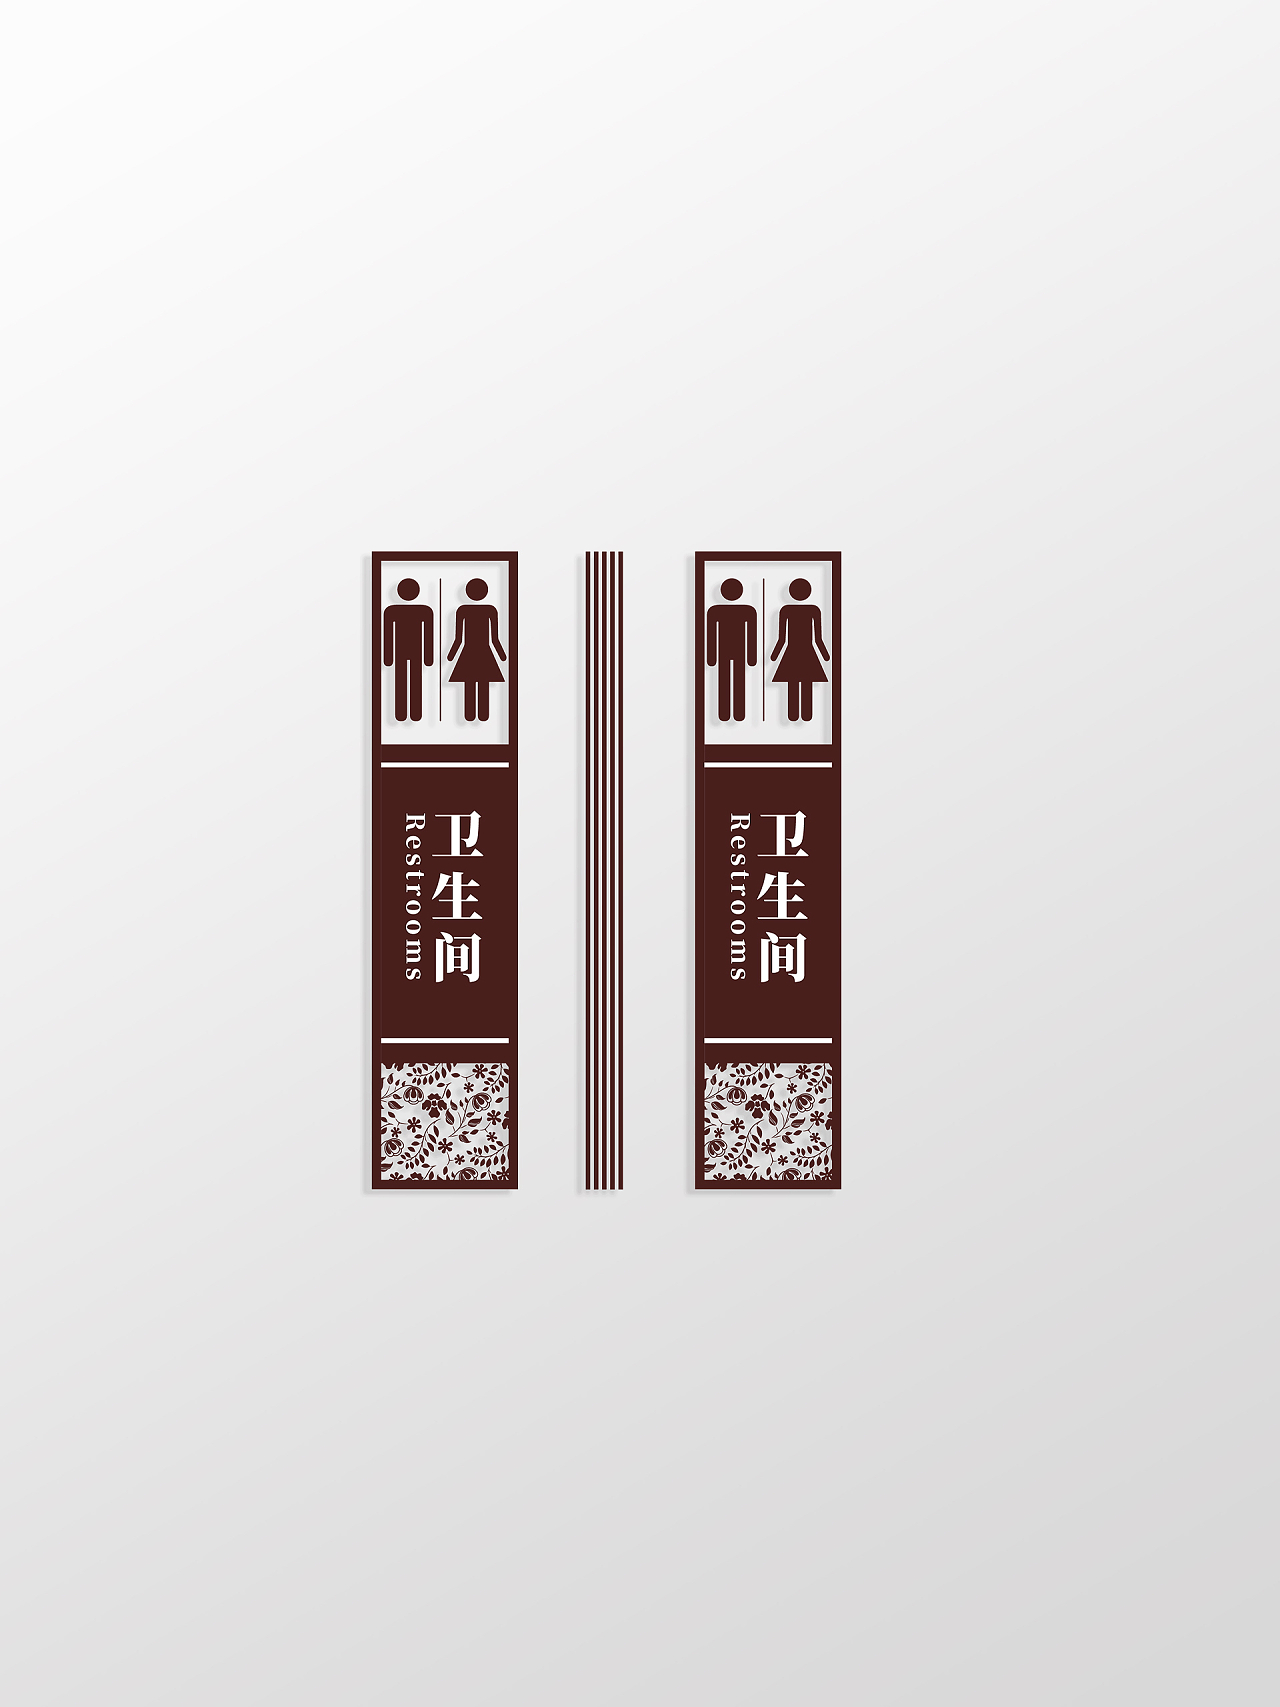 深褐色简约风男女卫生间标识设计公共卫生间指示牌